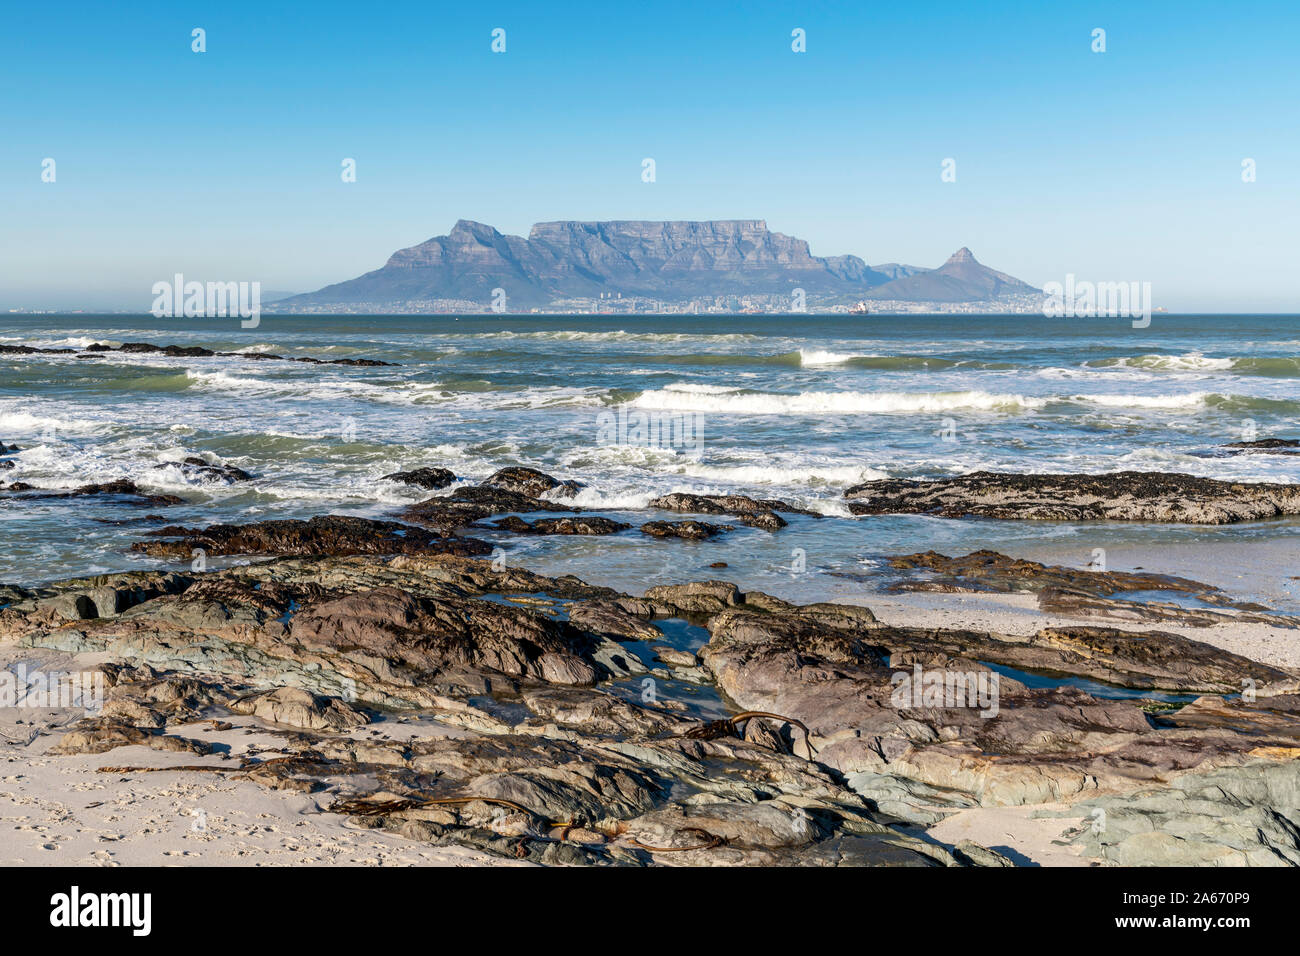 Bloubergstrand plage avec en arrière-plan la Montagne de la Table, Cape Town, Western Cape, Afrique du Sud Banque D'Images